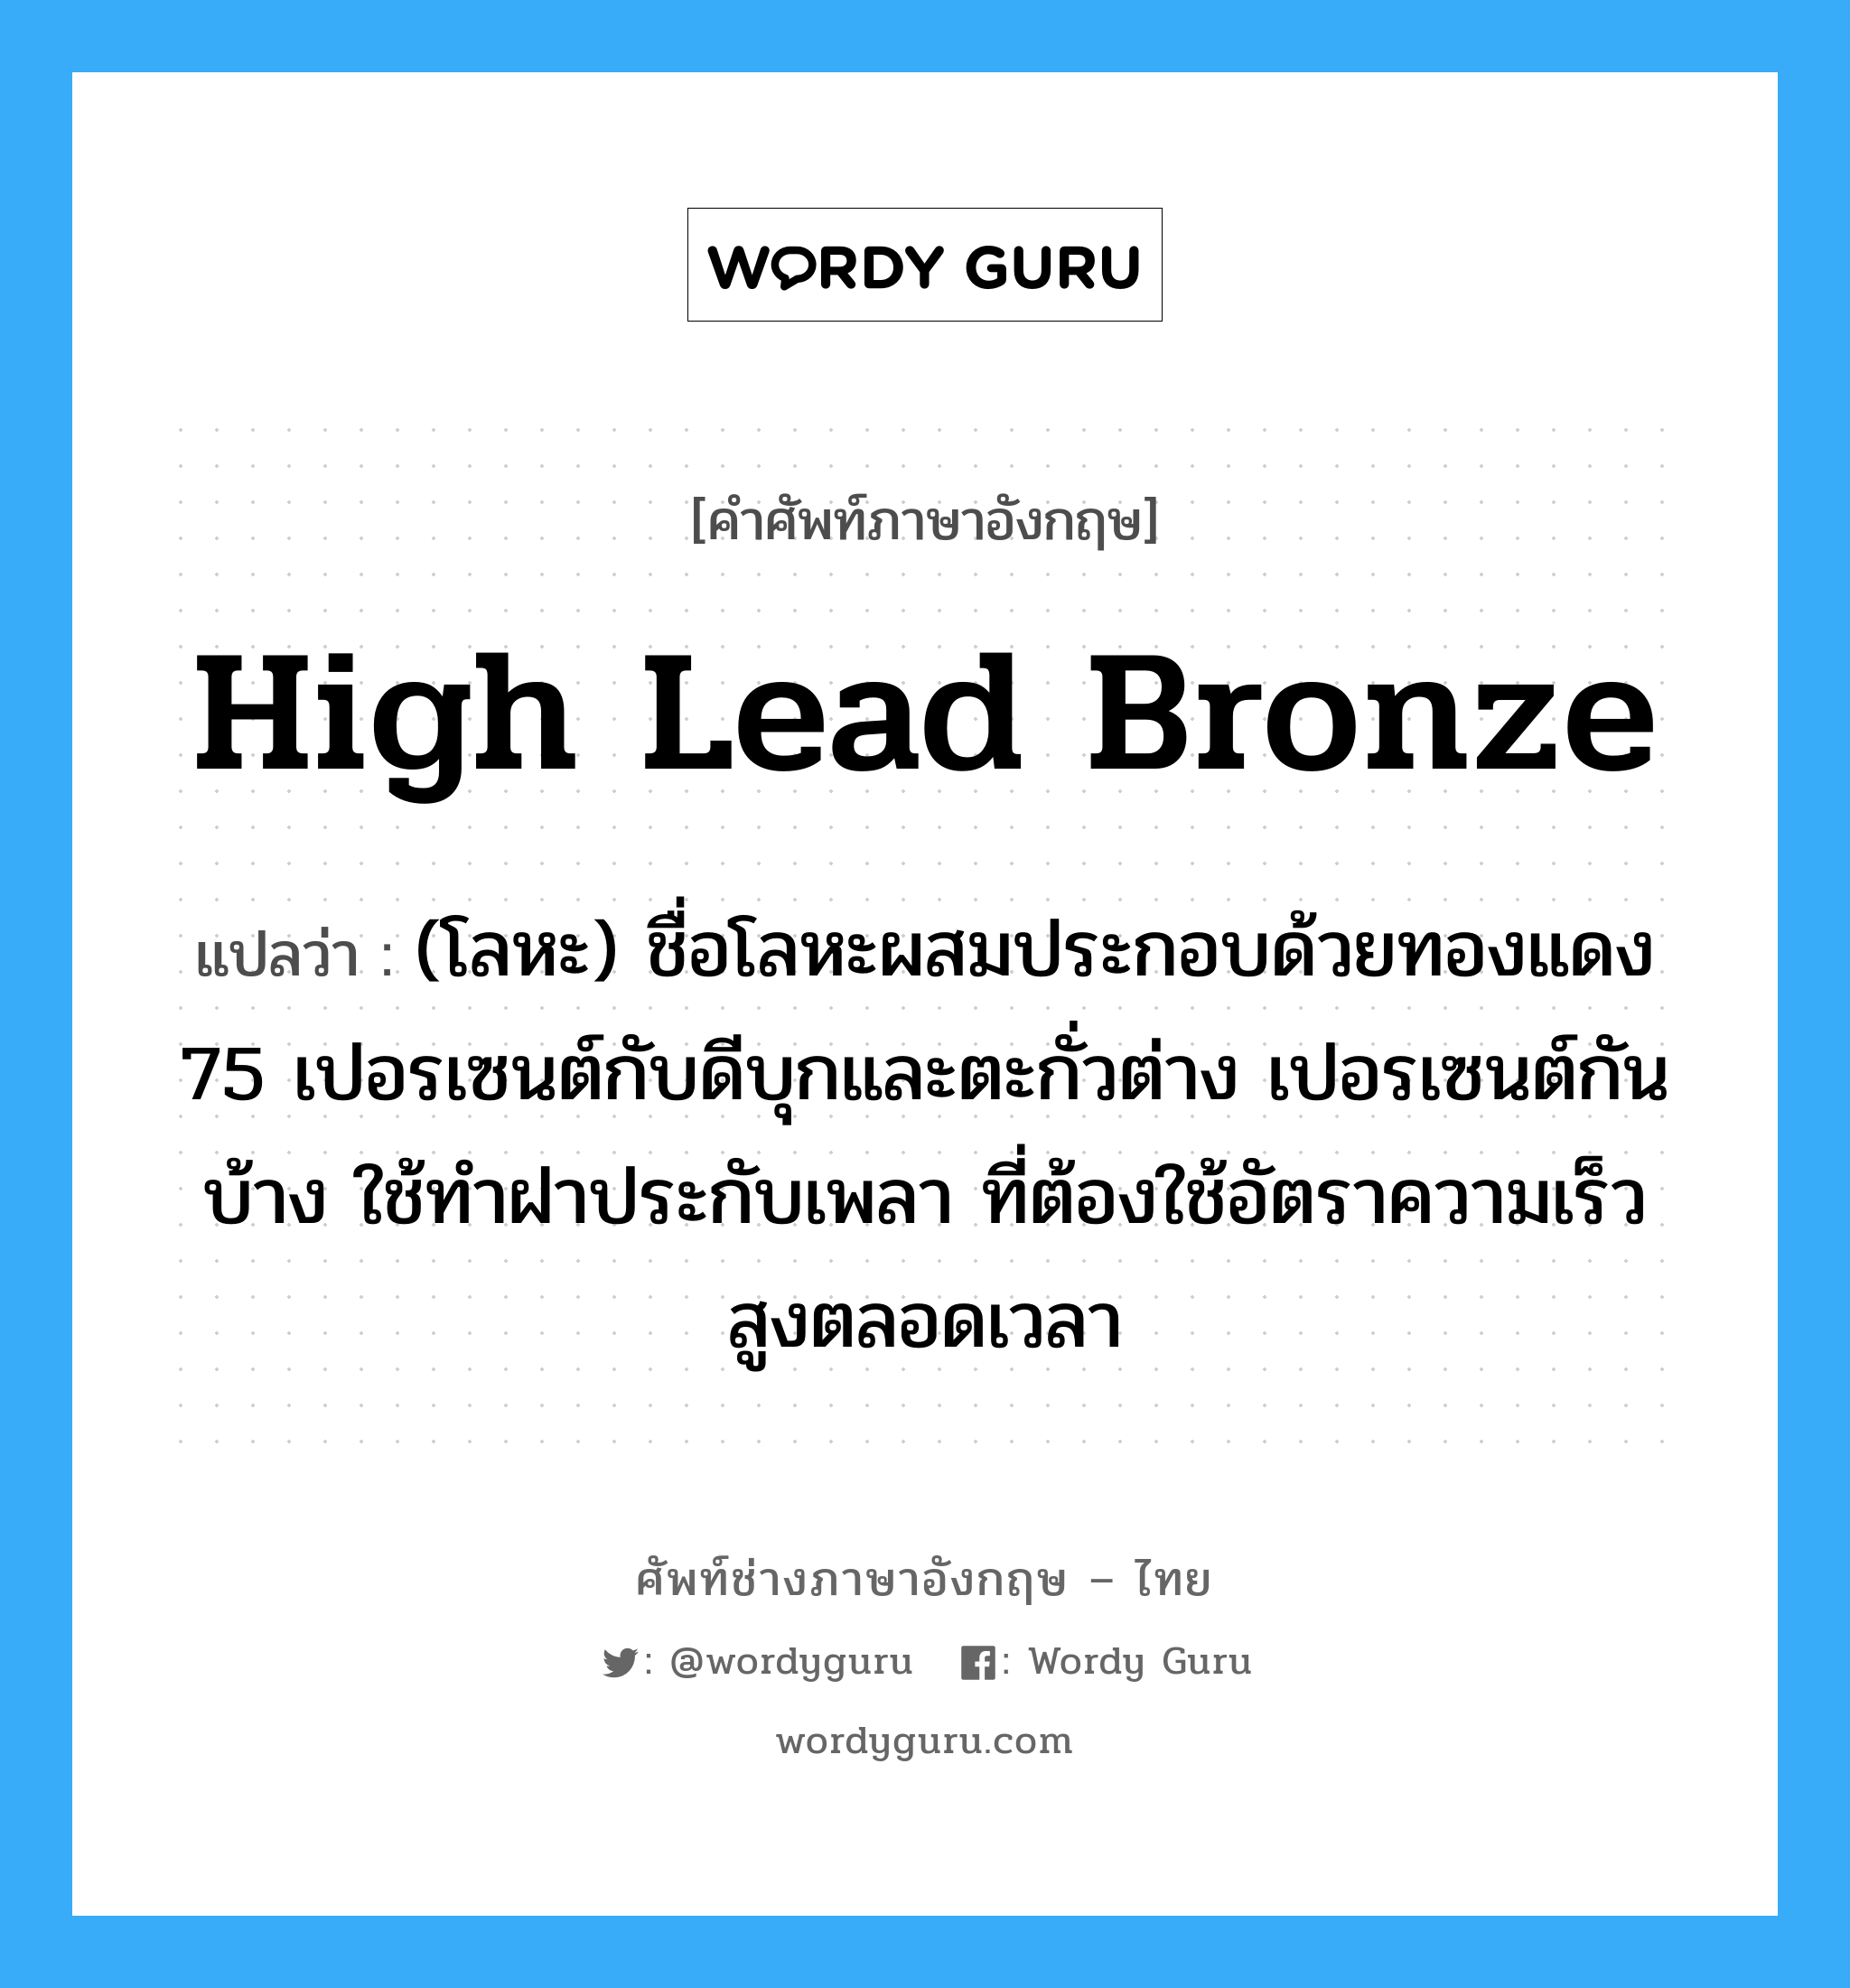 high lead bronze แปลว่า?, คำศัพท์ช่างภาษาอังกฤษ - ไทย high lead bronze คำศัพท์ภาษาอังกฤษ high lead bronze แปลว่า (โลหะ) ชื่อโลหะผสมประกอบด้วยทองแดง 75 เปอรเซนต์กับดีบุกและตะกั่วต่าง เปอรเซนต์กันบ้าง ใช้ทำฝาประกับเพลา ที่ต้องใช้อัตราความเร็วสูงตลอดเวลา